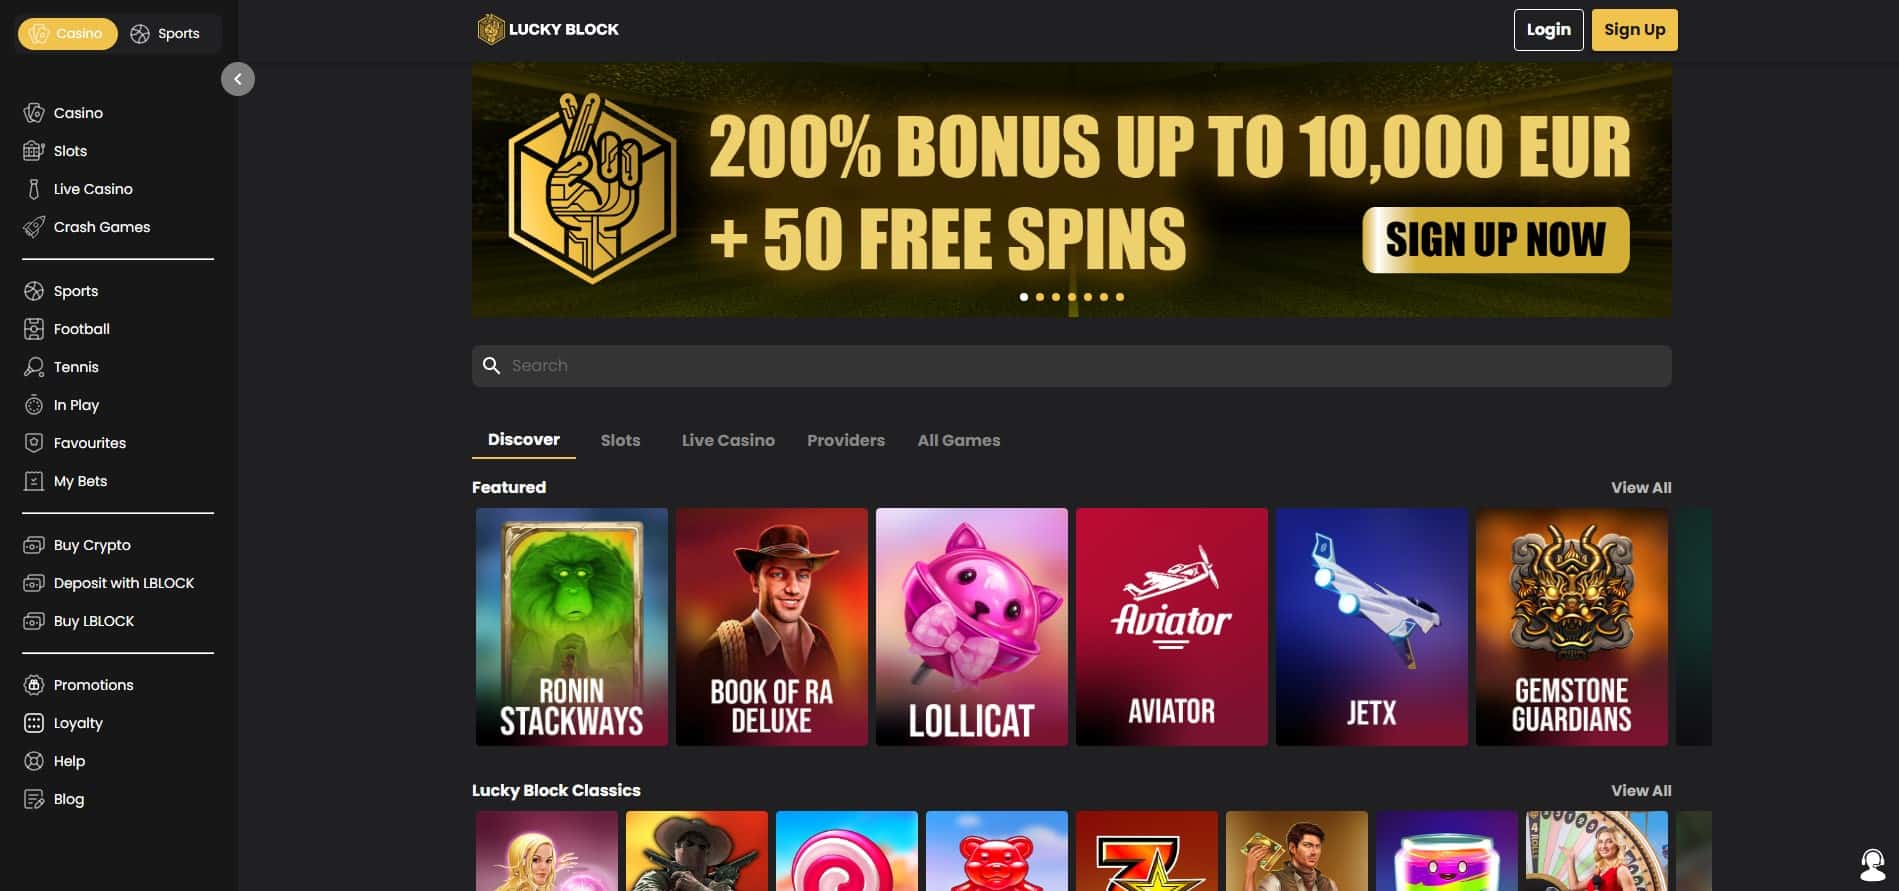 lucky block casino homepage